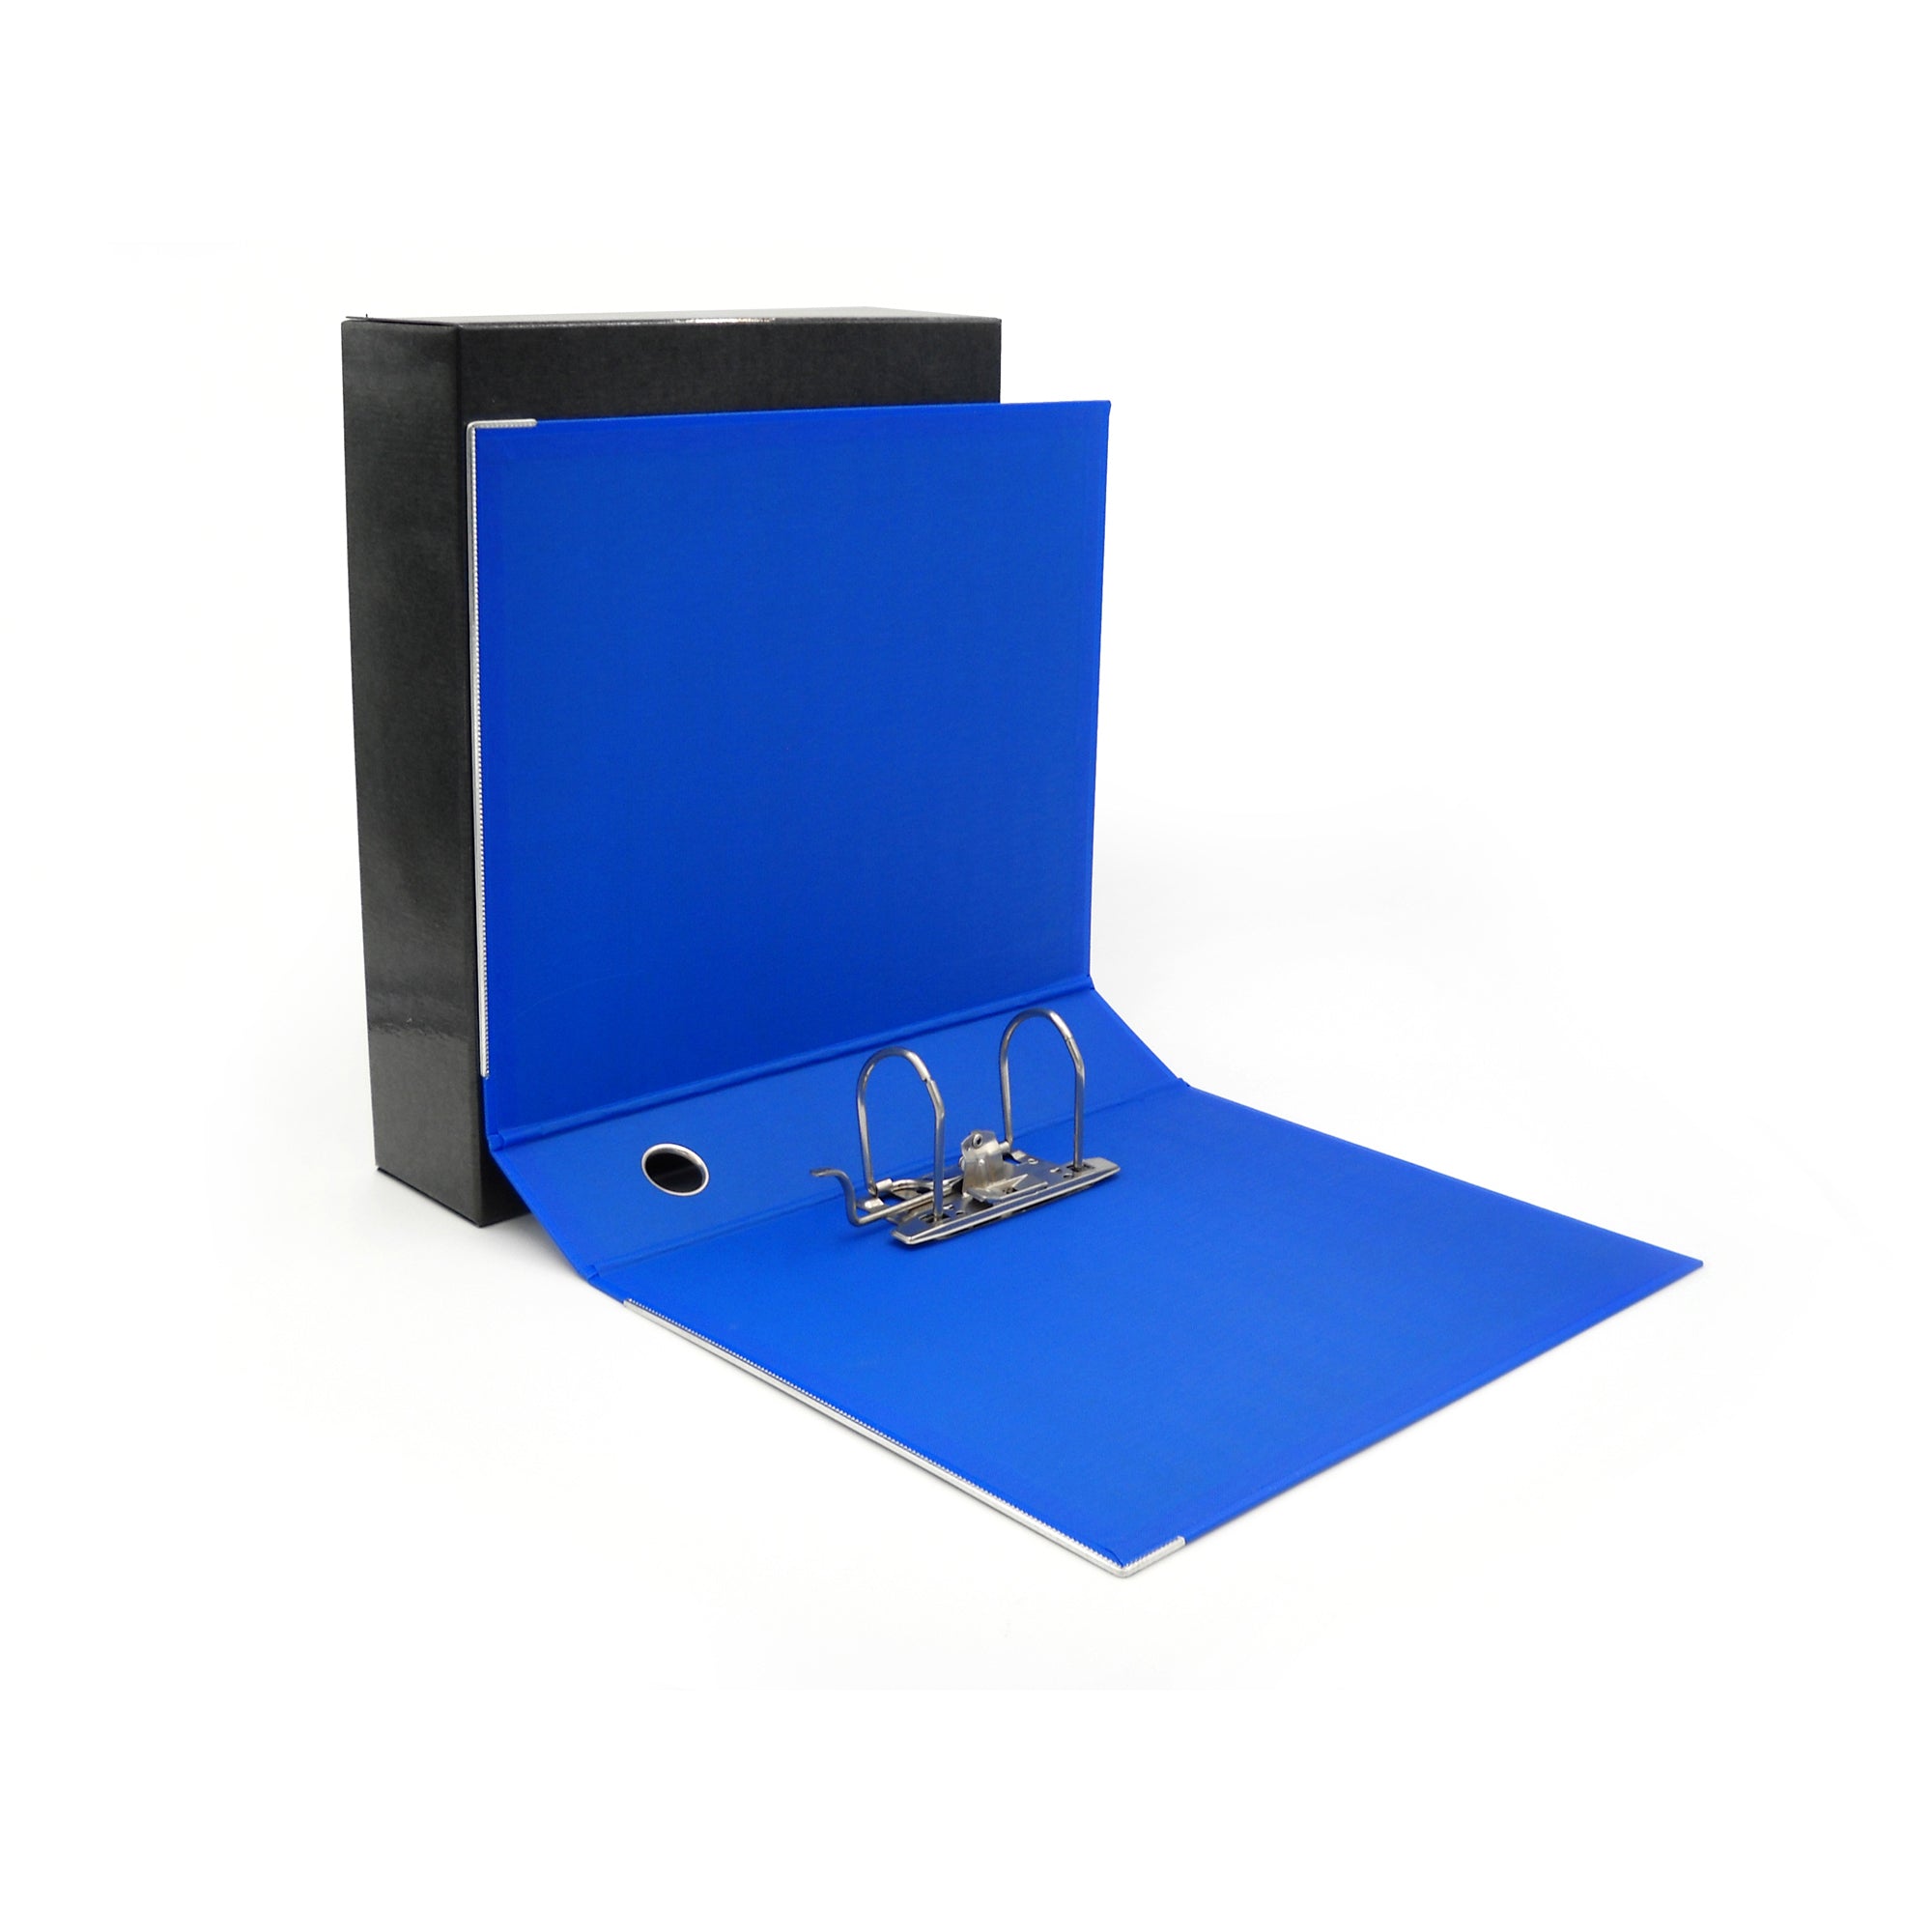 starline-registratore-kingbox-f-to-protocollo-dorso-8cm-blu